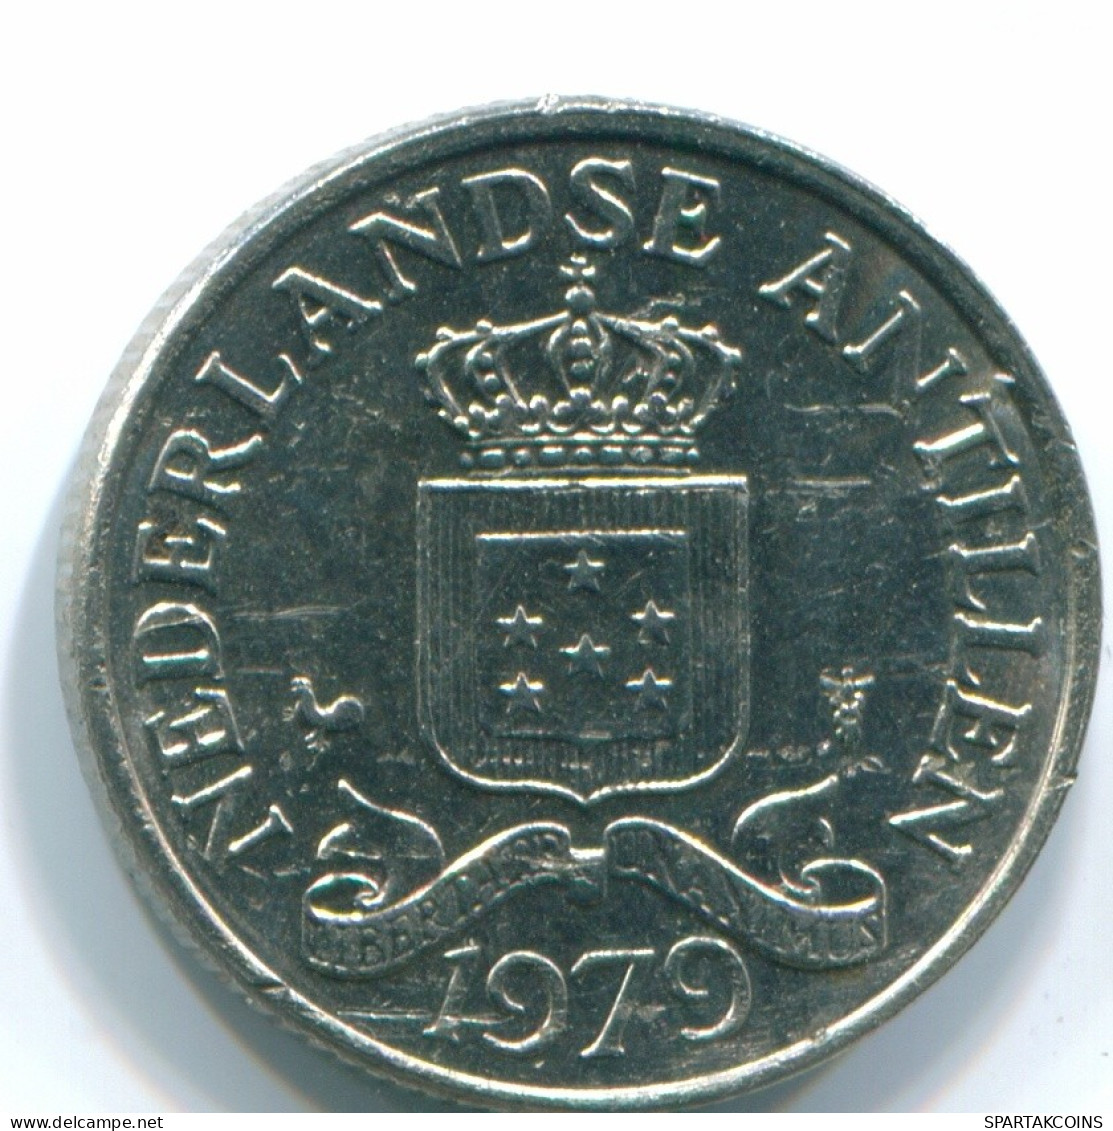 25 CENTS 1979 NIEDERLÄNDISCHE ANTILLEN Nickel Koloniale Münze #S11647.D.A - Niederländische Antillen